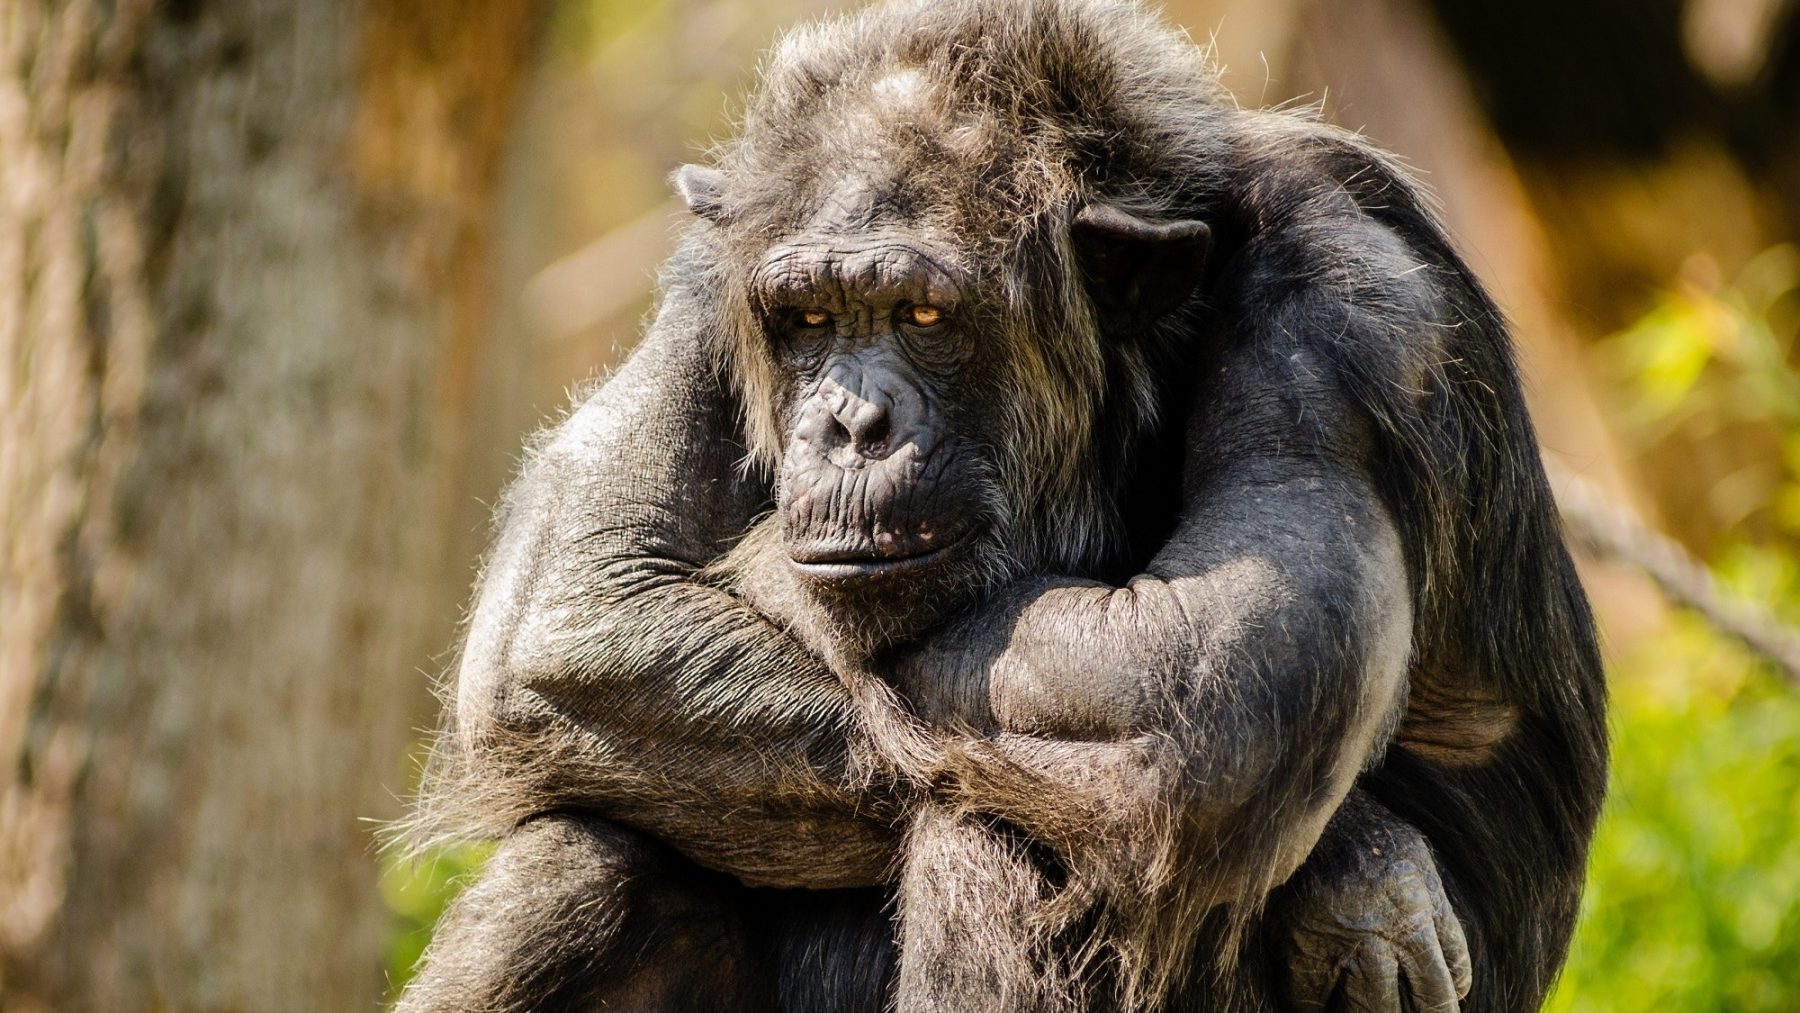 Bezoeker niet meer welkom in Antwerpse dierentuin door intieme band met aap: 'Ongezond'